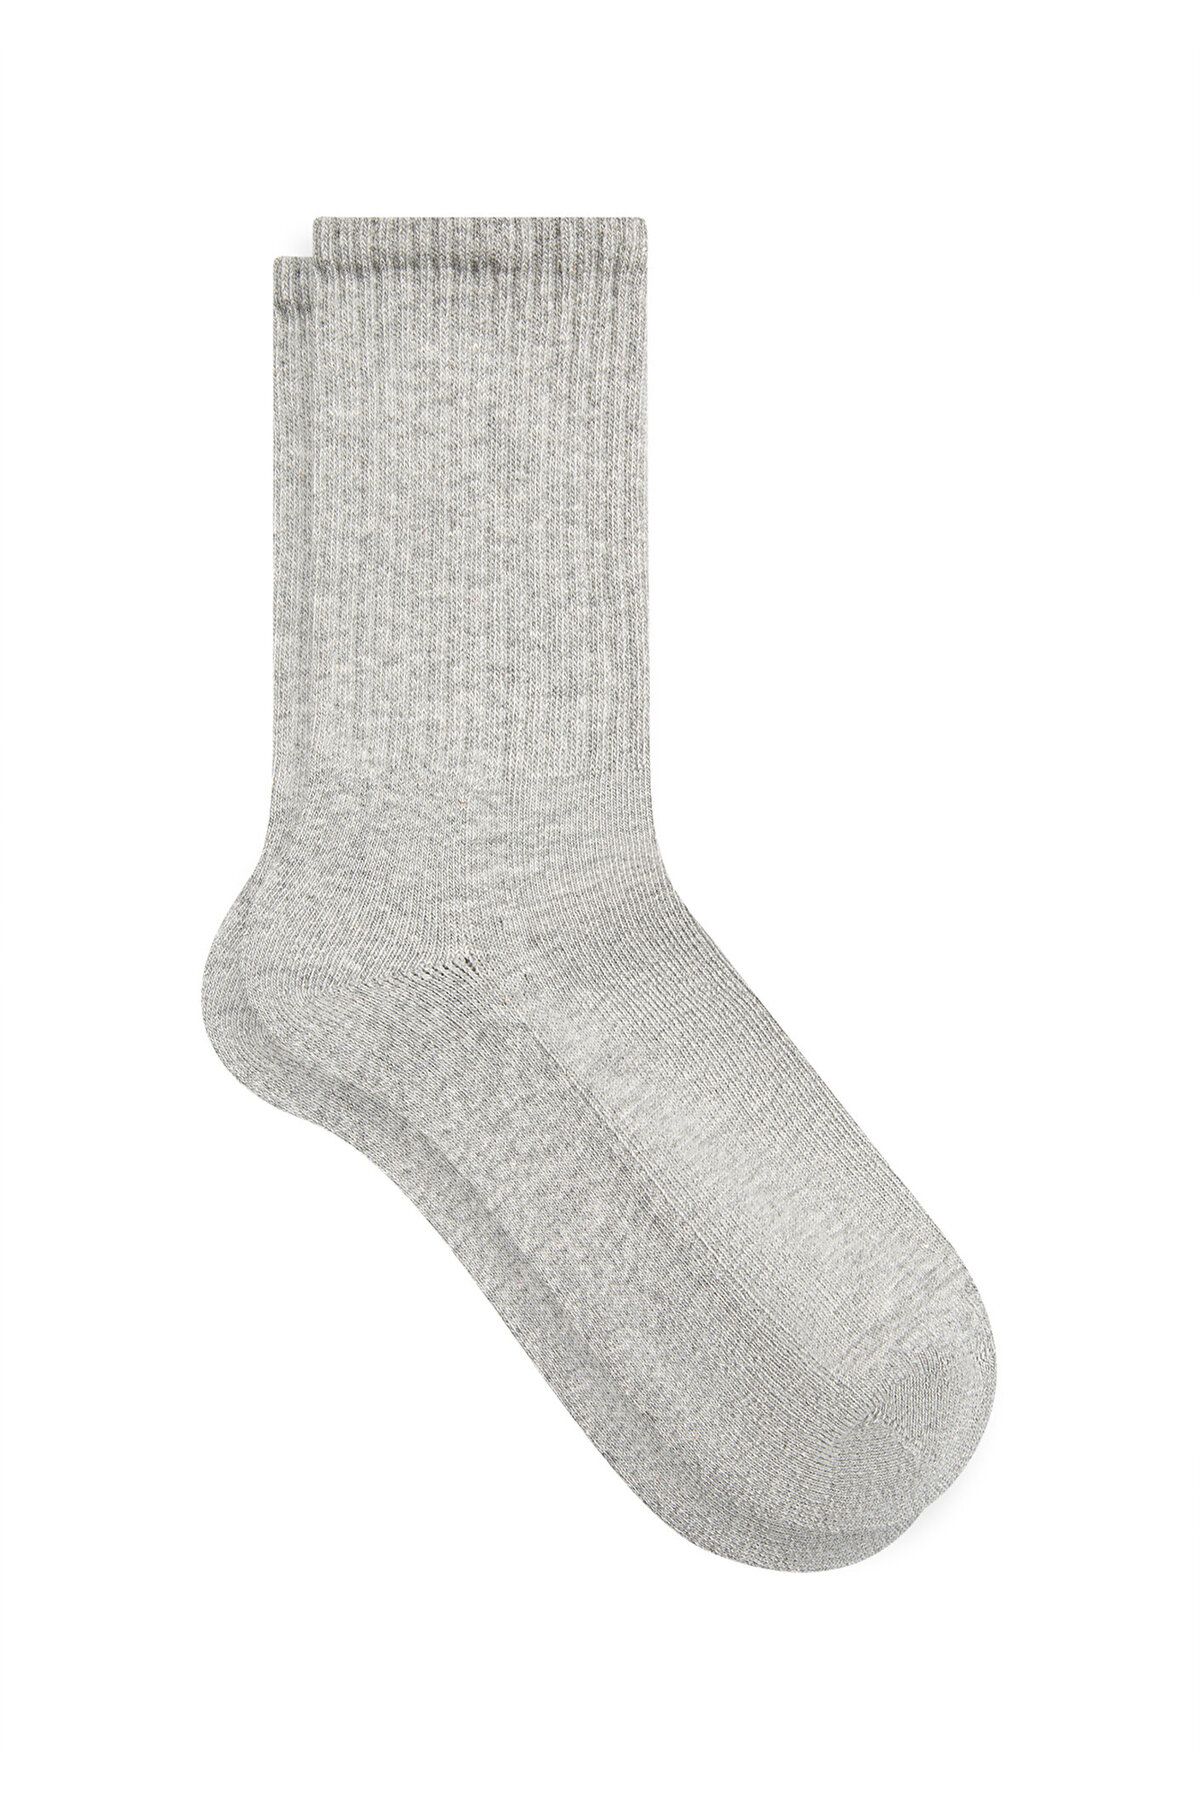 Mavi جوراب های جامعه خاکستری 191144-82816